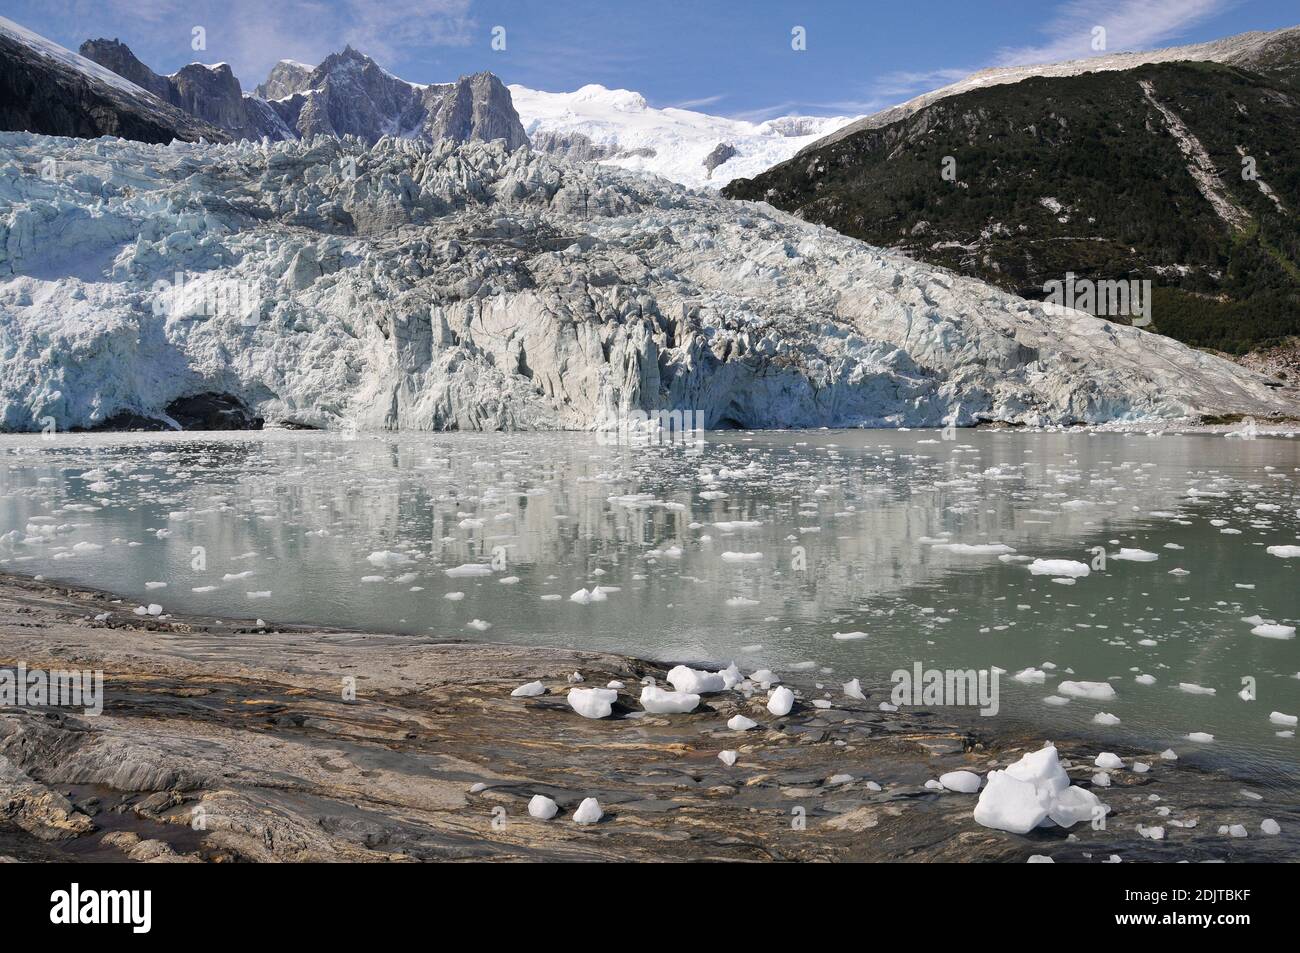 Amérique du Sud, Chili, région de Xll, Tierra del Fuego, Cruceros Australis M / S via Australis, Beagle Channel, glacier de Pia Banque D'Images